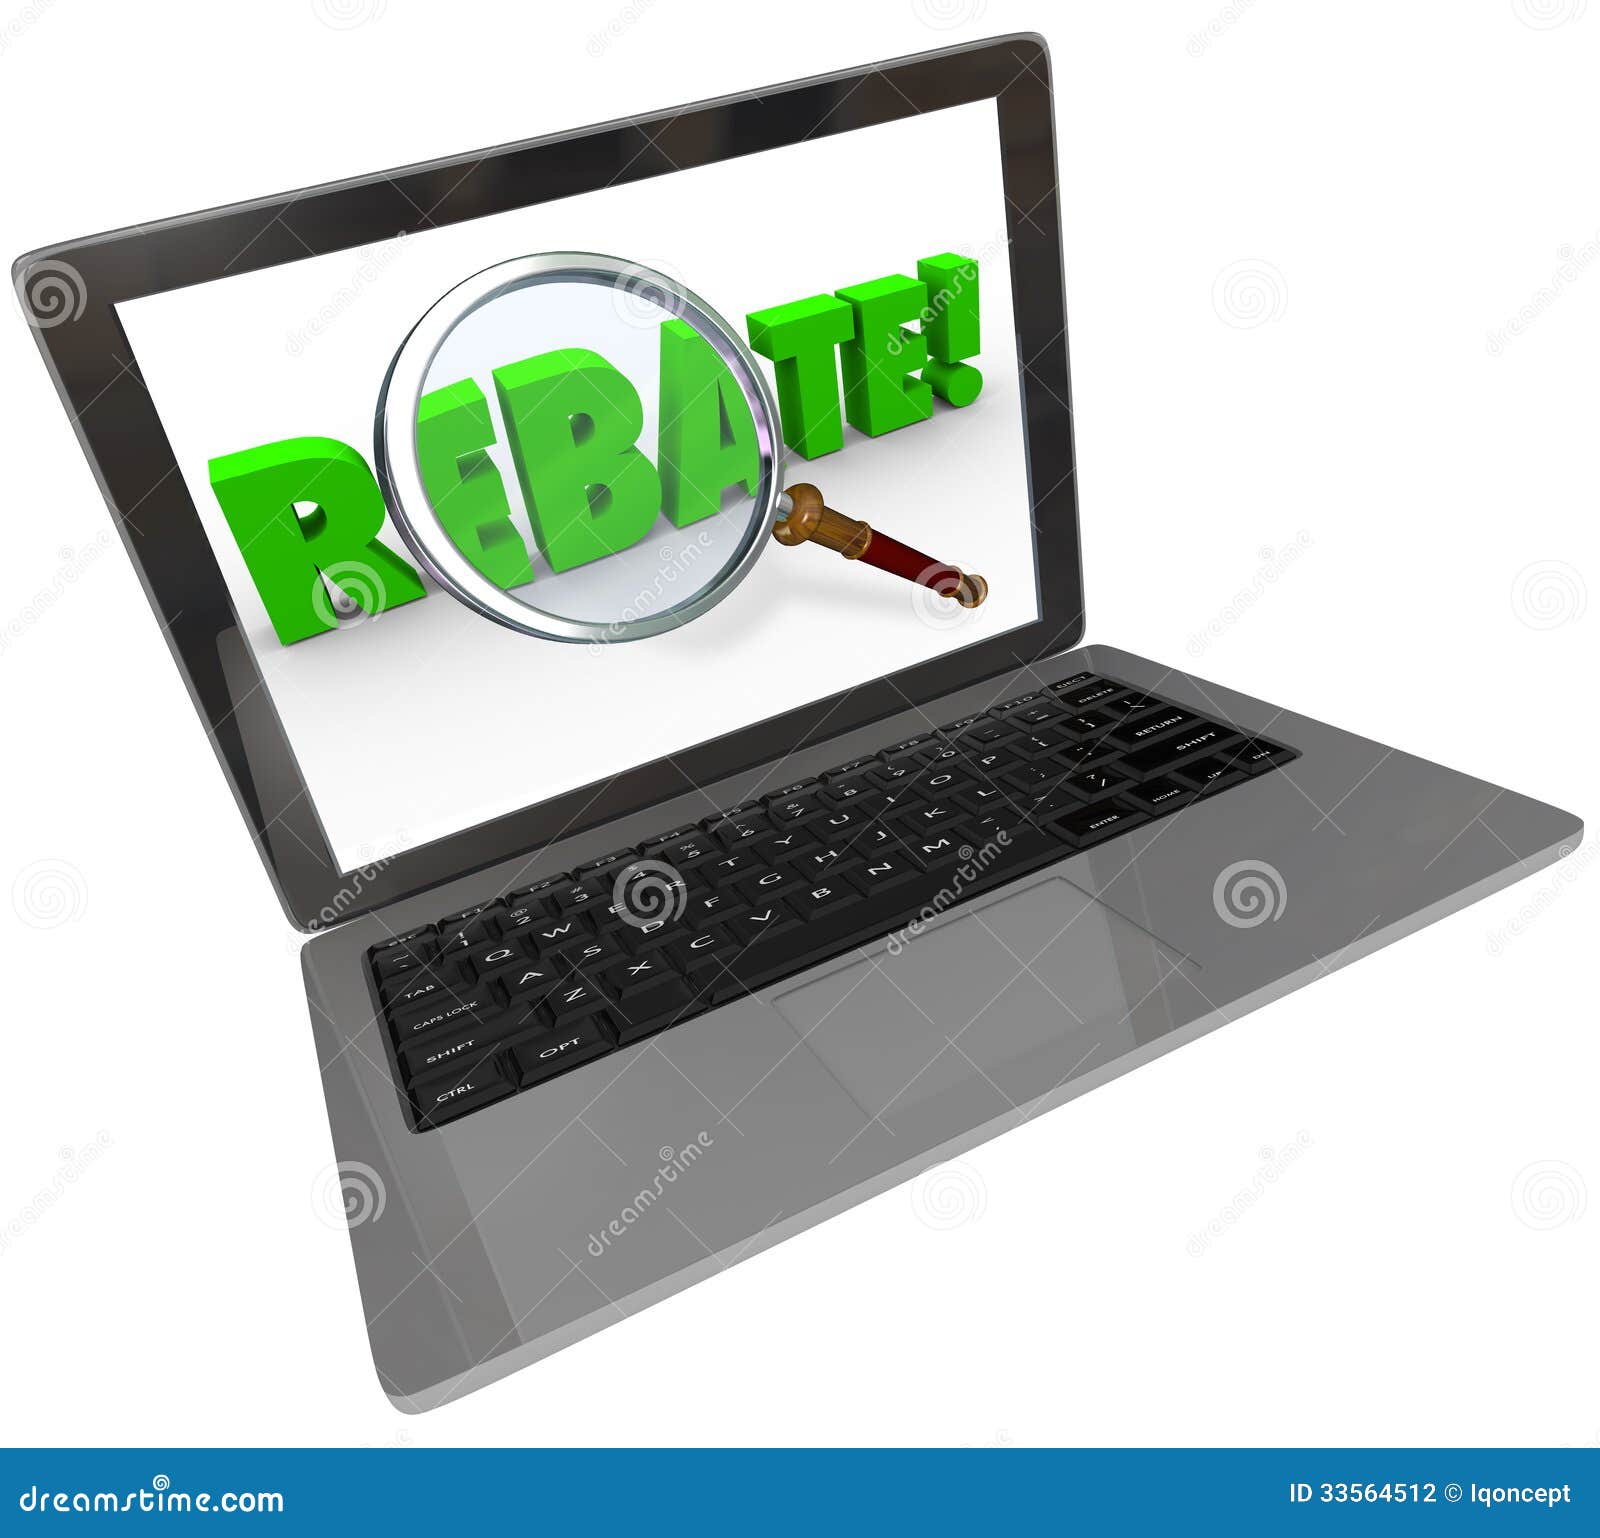 rebate word computer laptop screen online shopping bargain